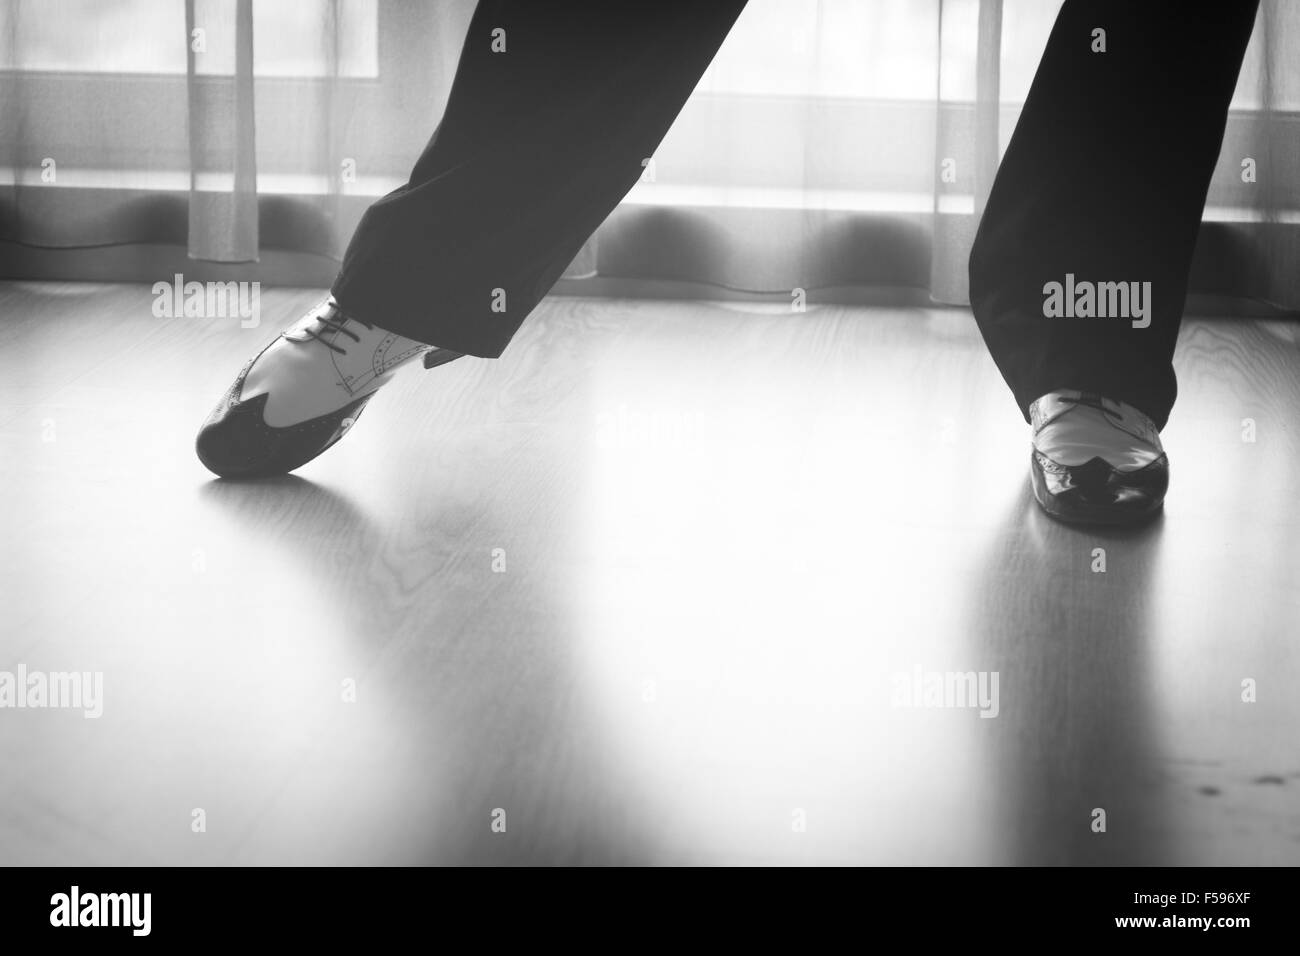 Tap dance shoes Banque d'images noir et blanc - Alamy